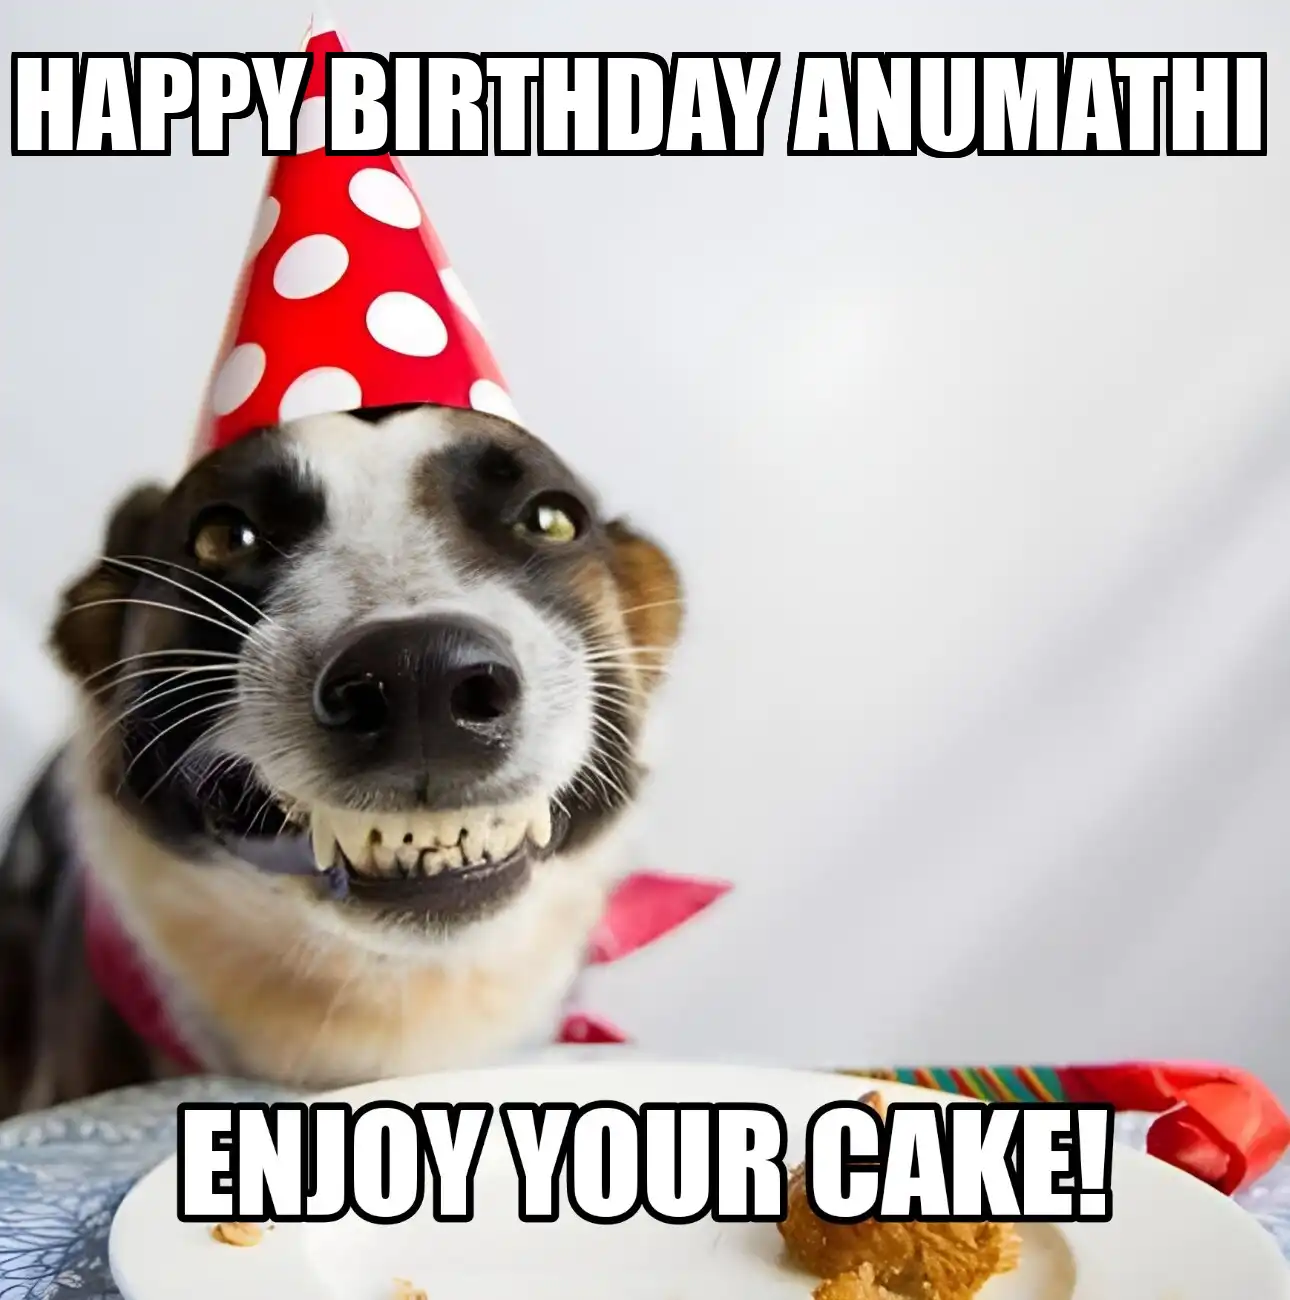 Happy Birthday Anumathi Enjoy Your Cake Dog Meme